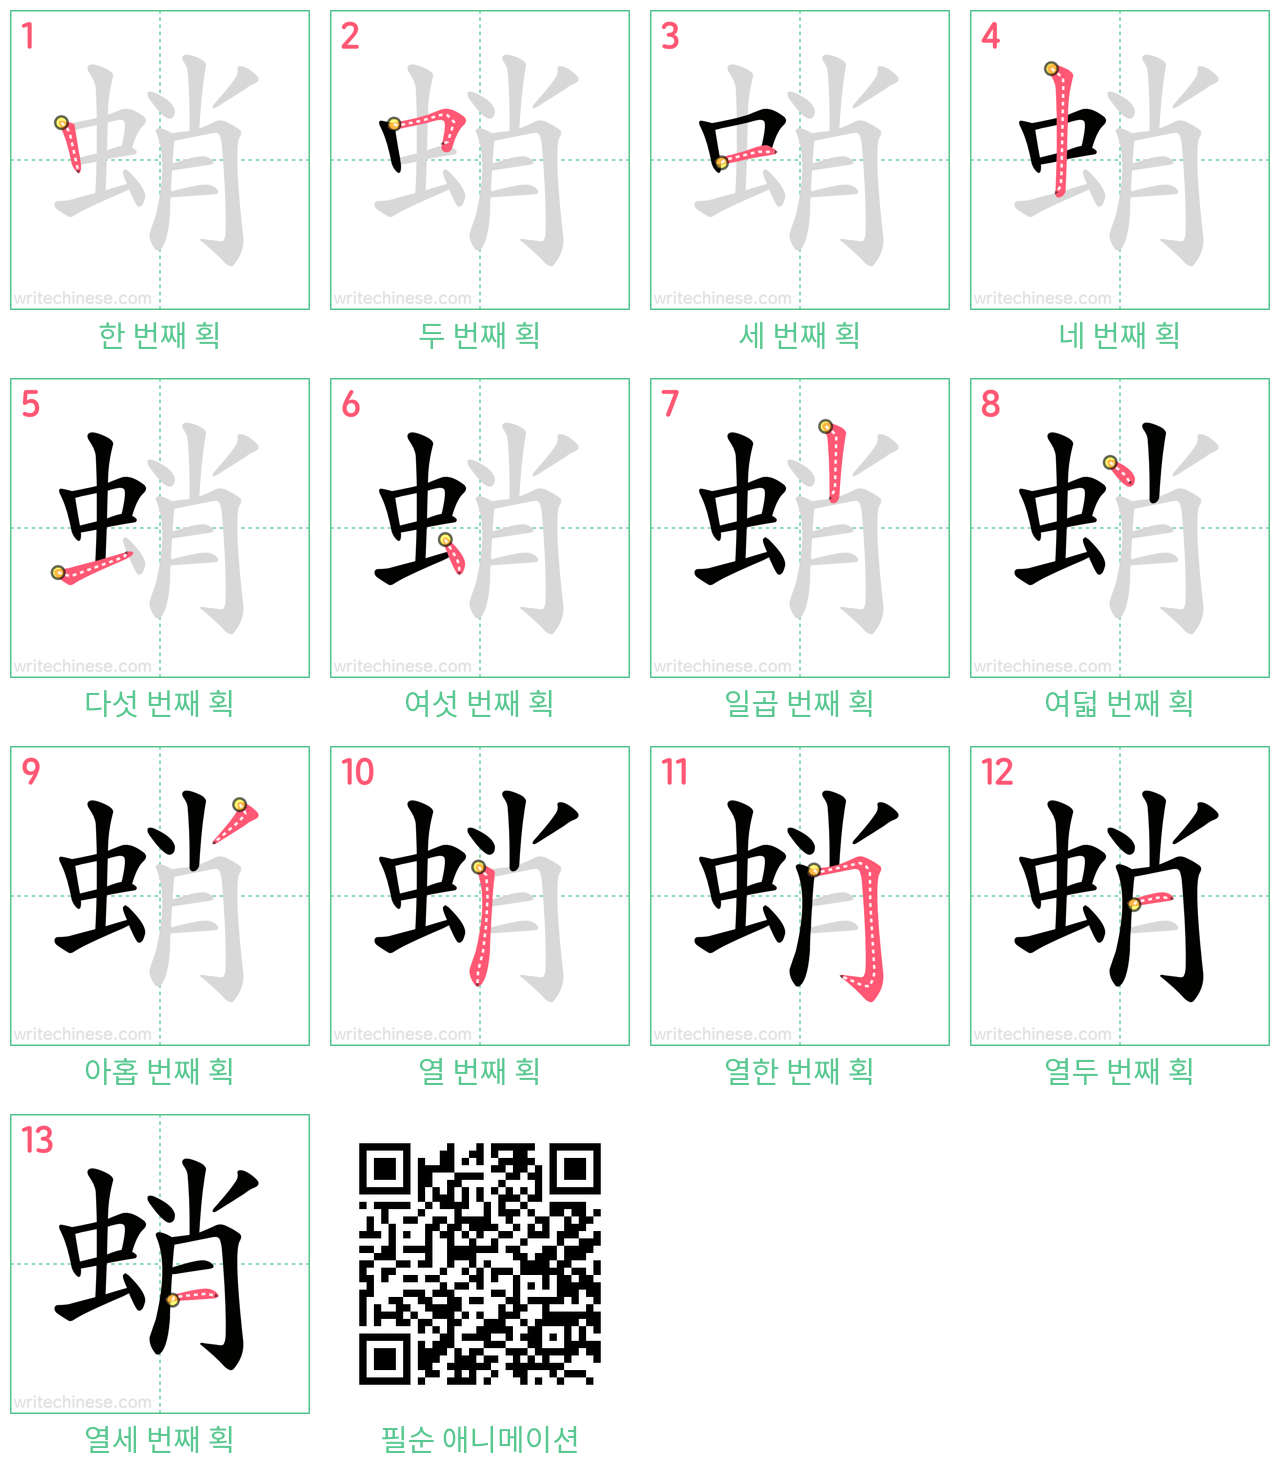 蛸 step-by-step stroke order diagrams